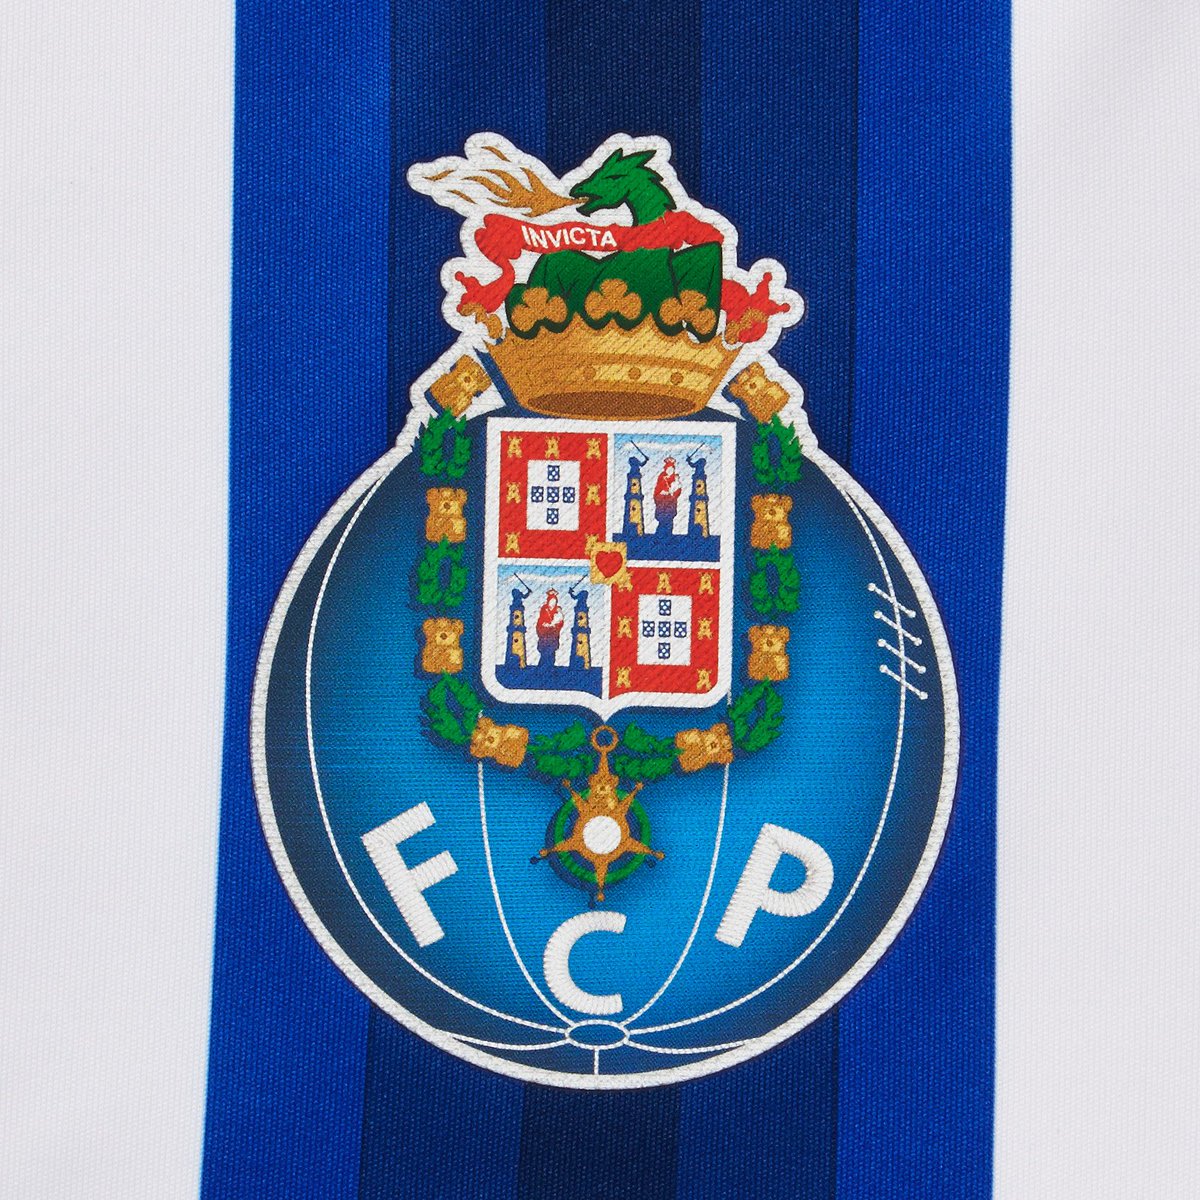 Tier list logos de clubes portugueses, por um designer gráfico. :  r/PrimeiraLiga